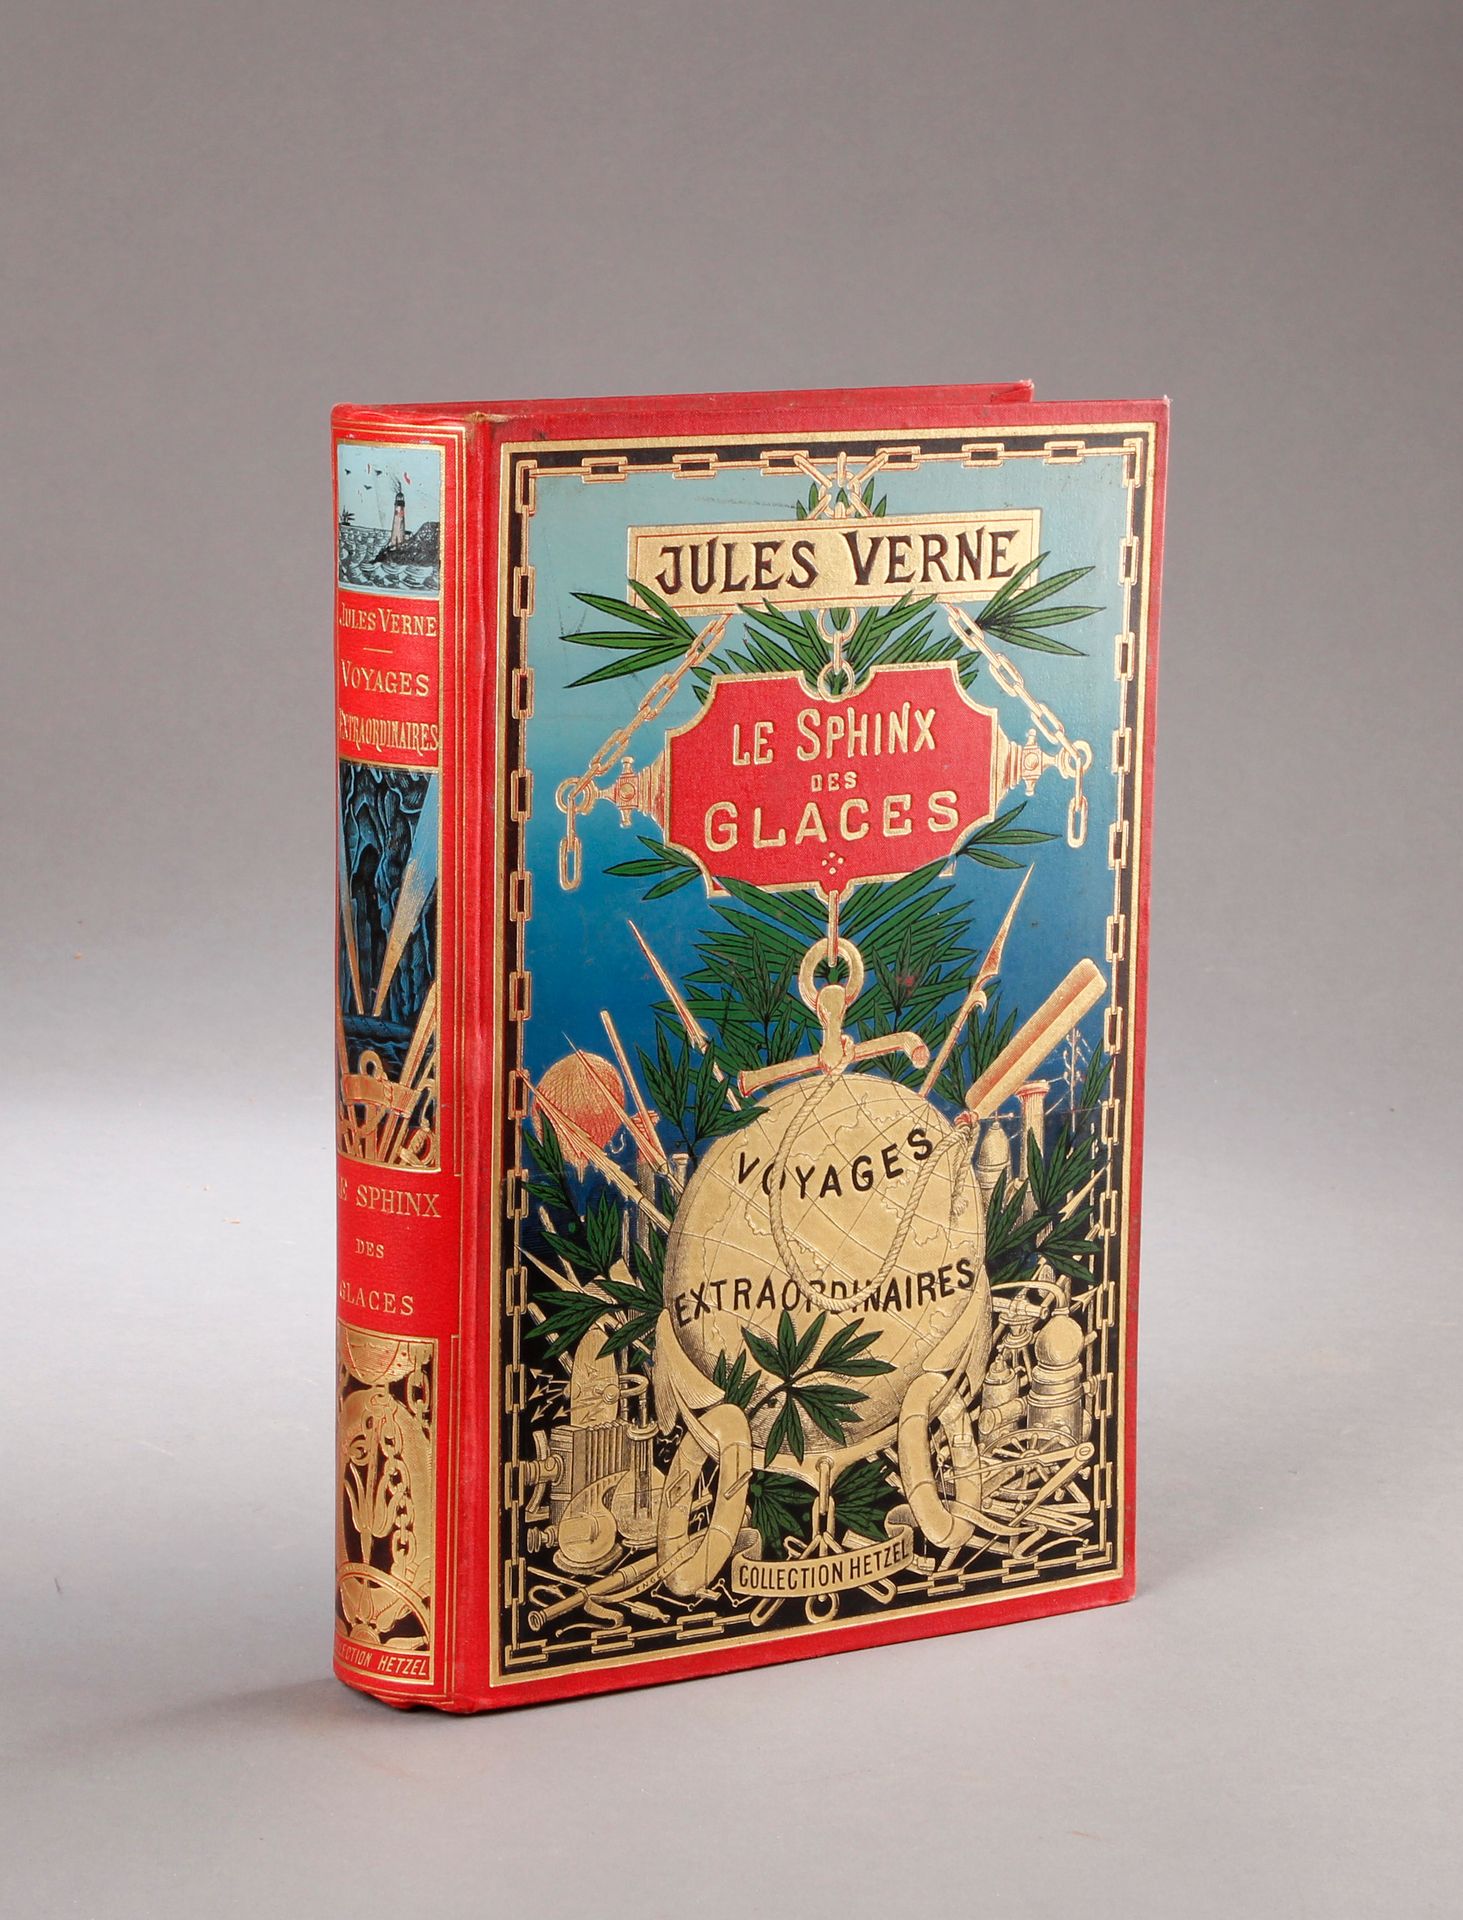 Jules VERNE / HETZEL. Le Sphinx de glaces (1897).
Cartoné policromado con globo &hellip;